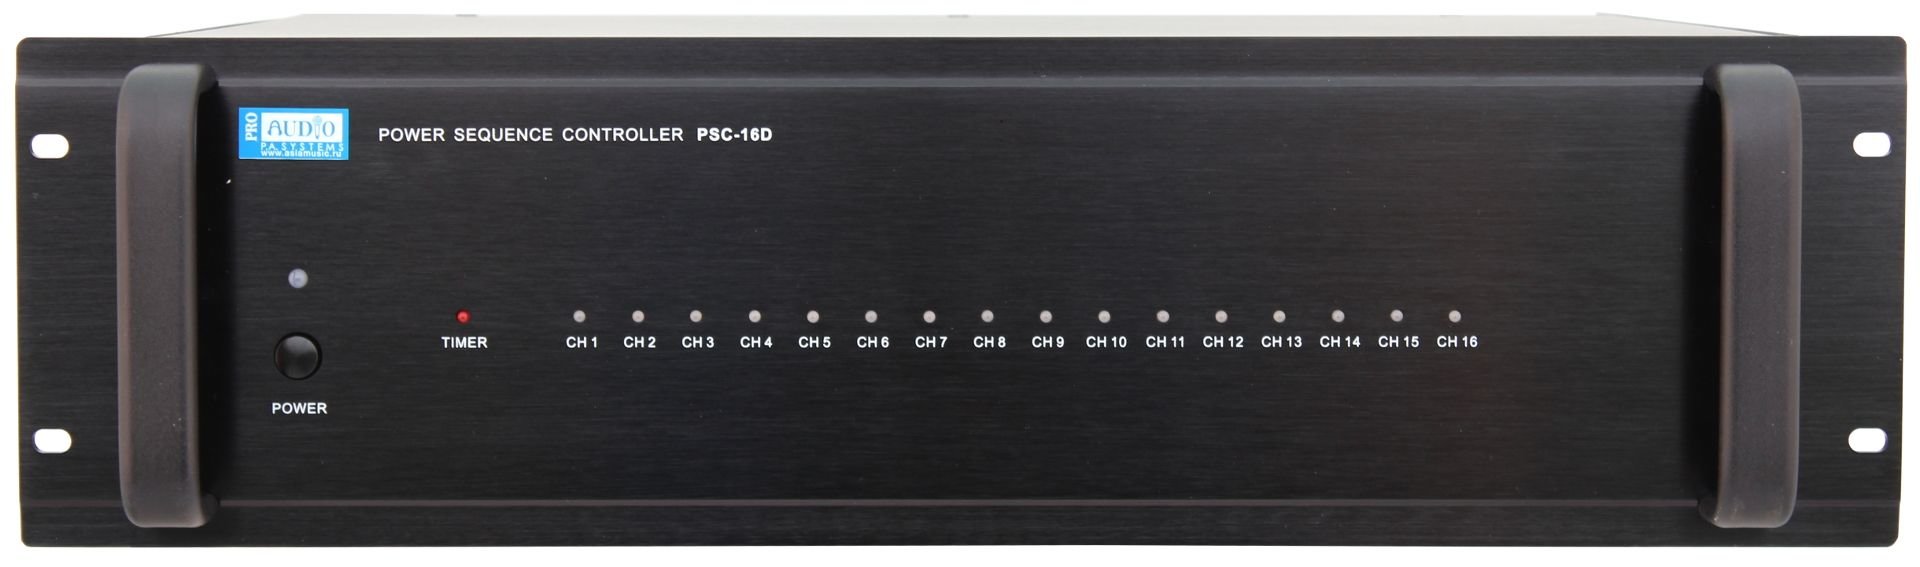 PROAUDIO PSC-16D Автоматический распределитель питания, 16 каналов, общая нагрузка 2 кВ, включение по коротко-замкнутому сигналу, последовательное включение розеток